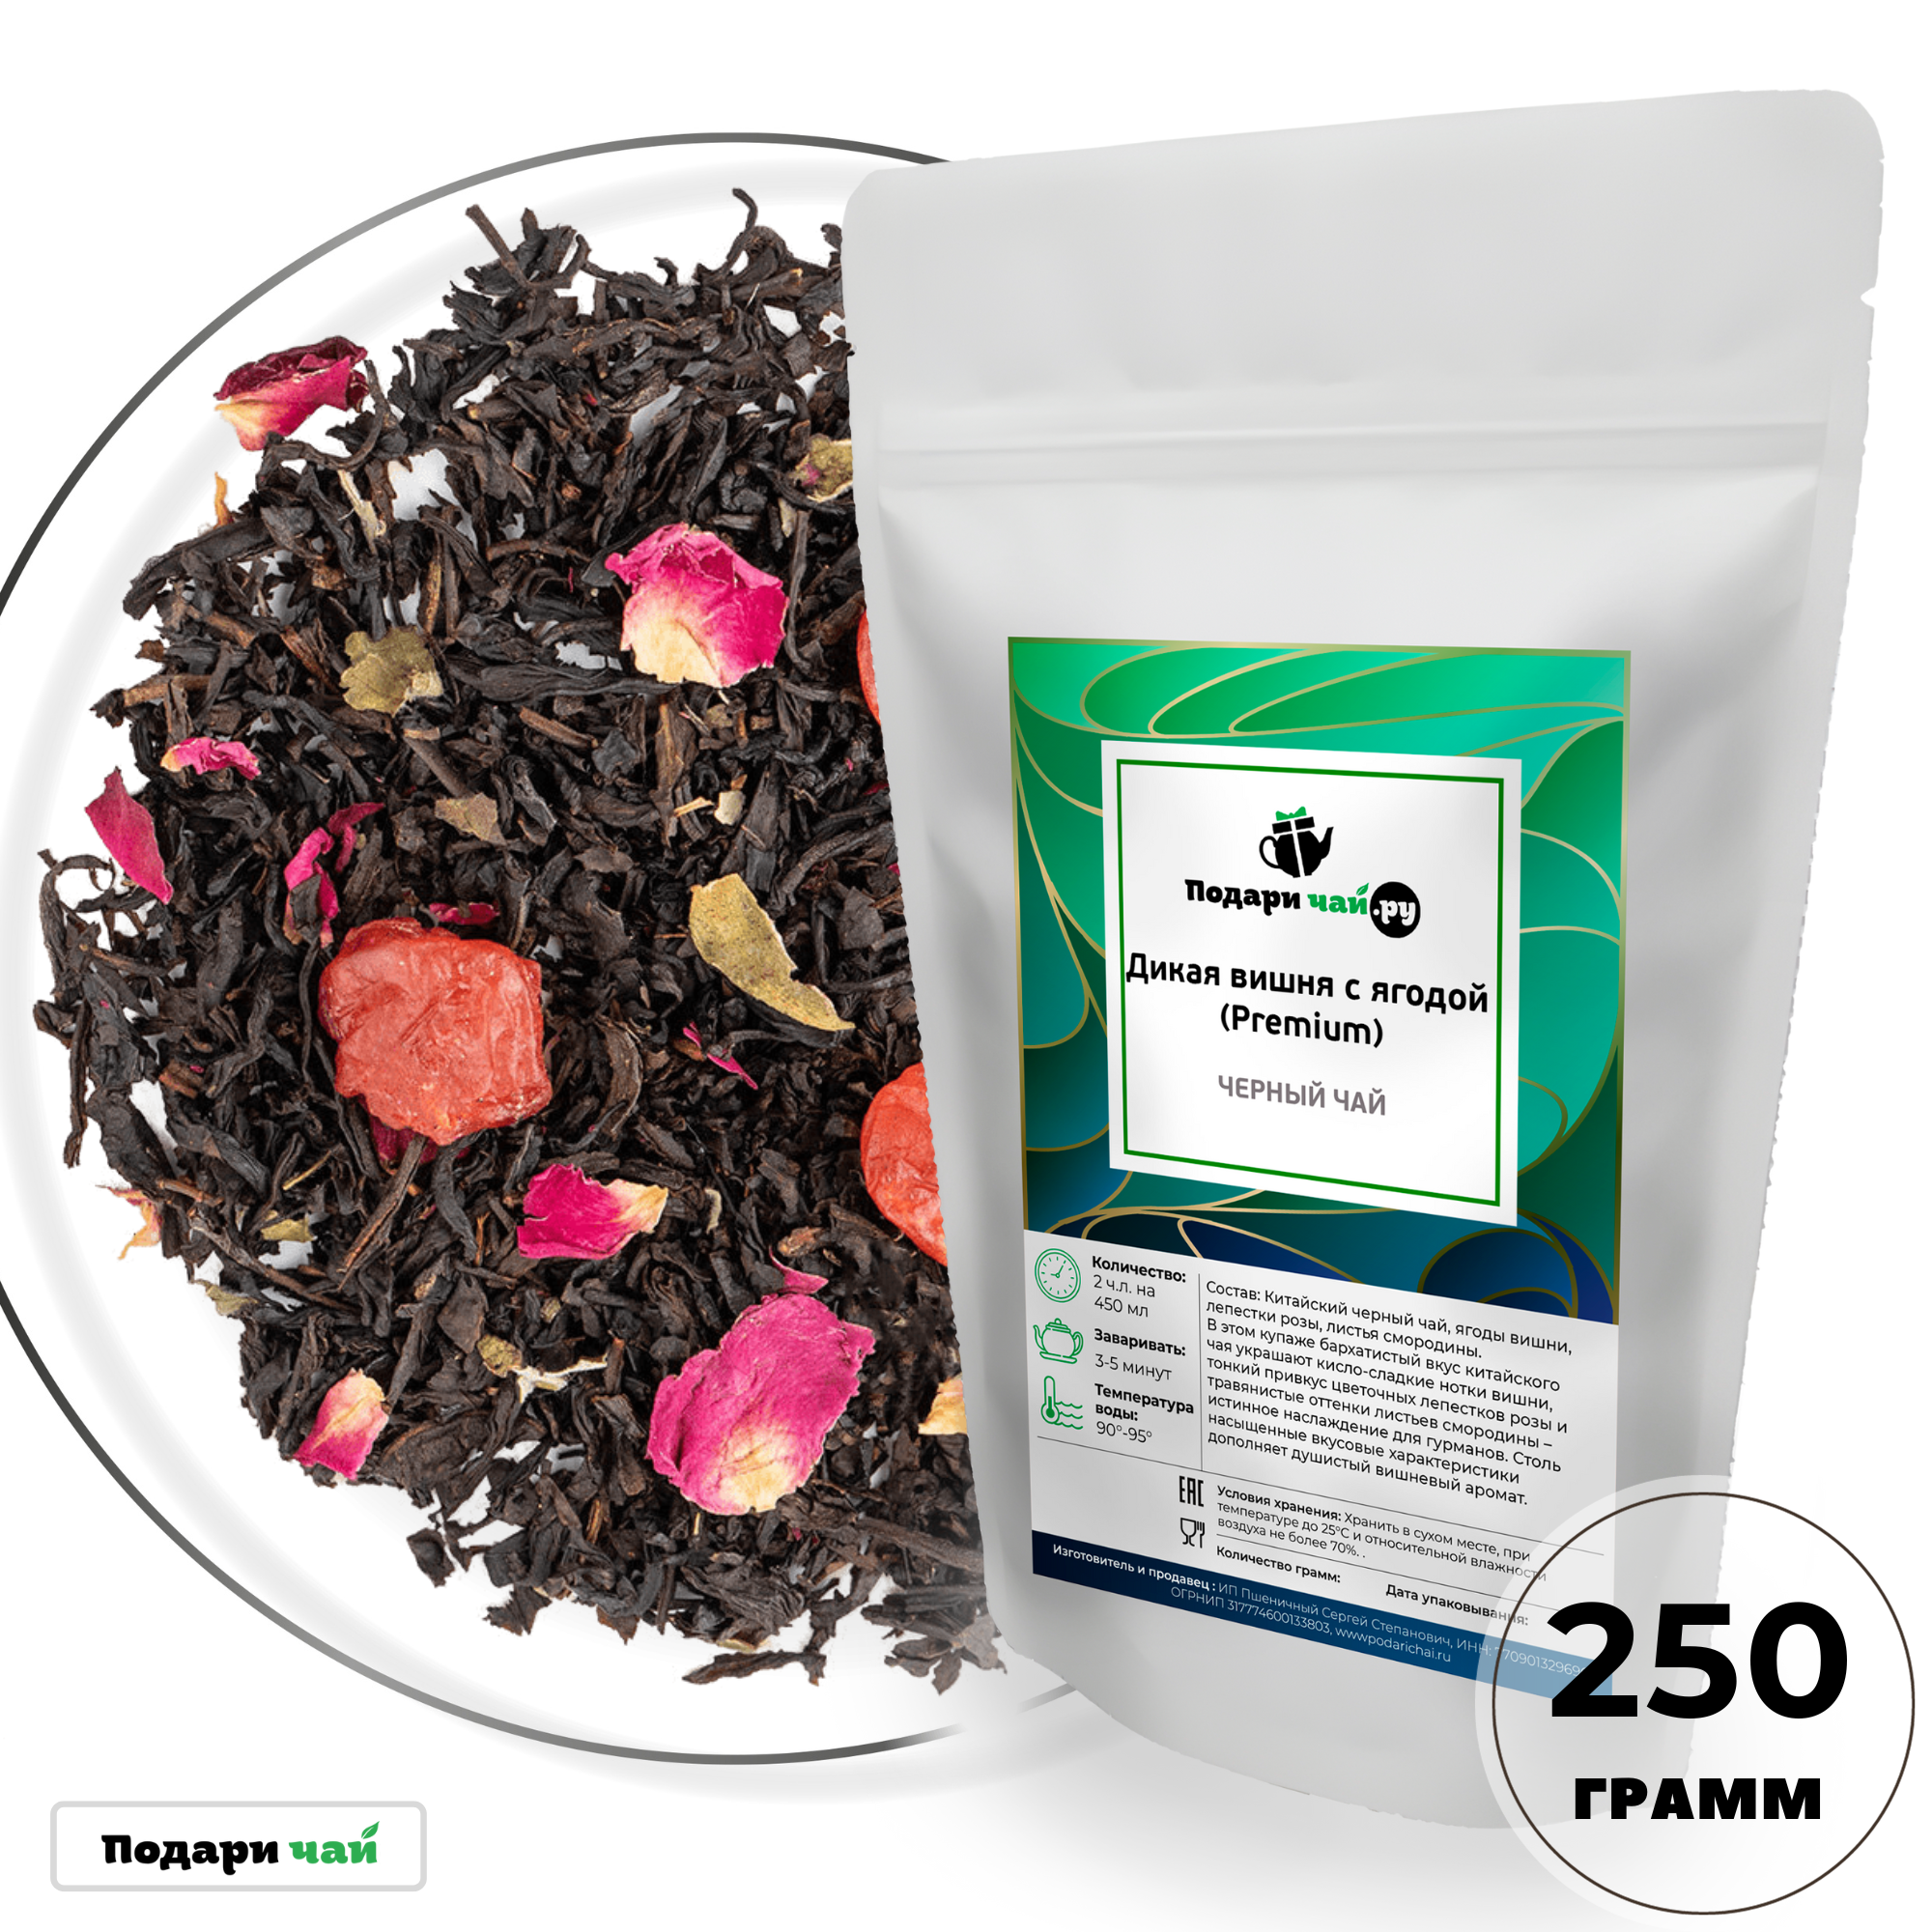 Черный чай Дикая вишня с ягодой (Premium), 250 г